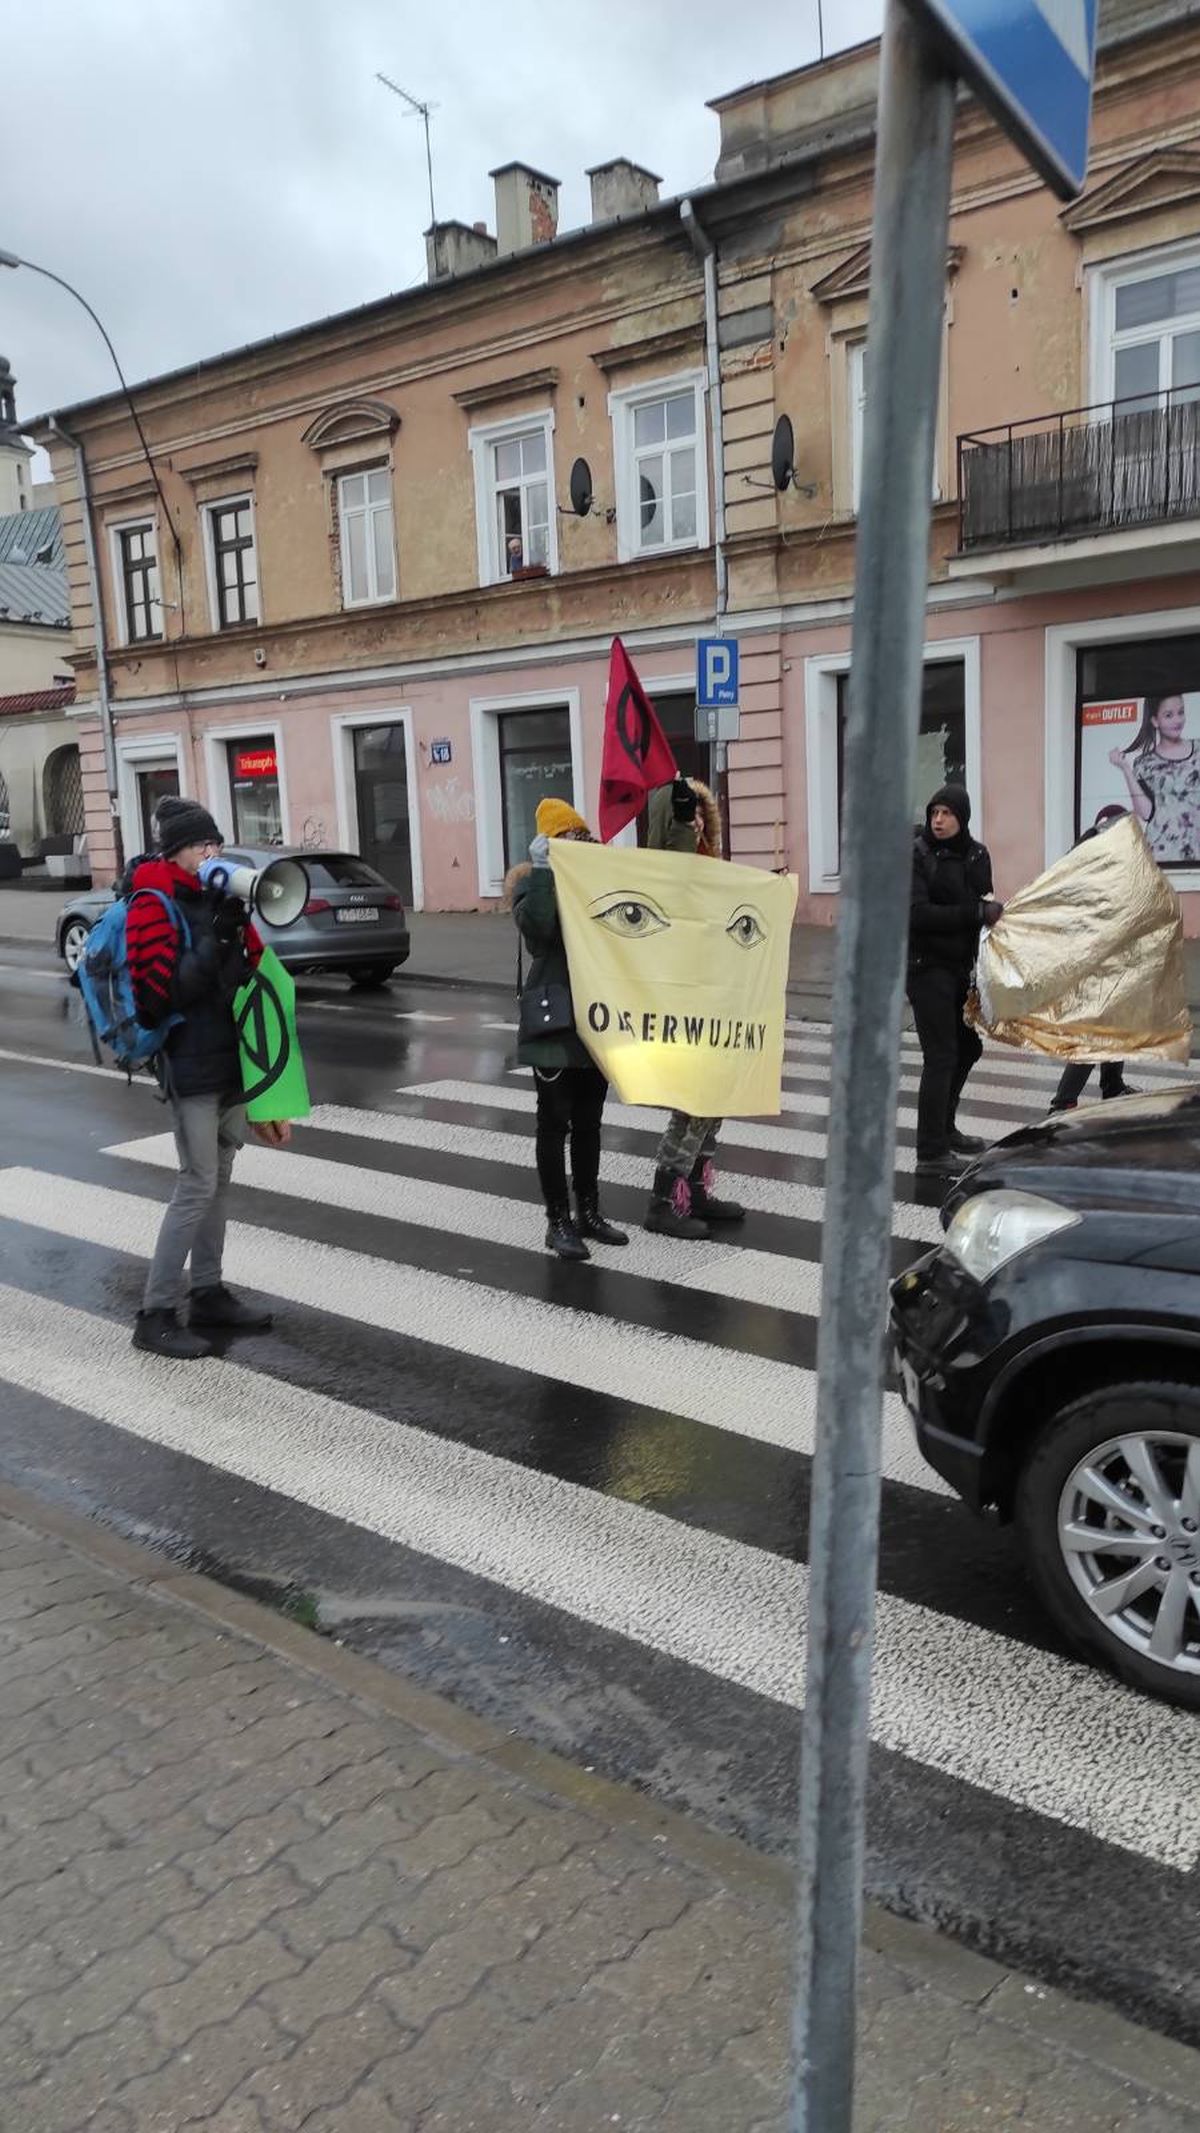 Aktywiści wstrzymali ruch w centrum Lublina. Akcja zakończyła się szarpaniną (zdjęcia)